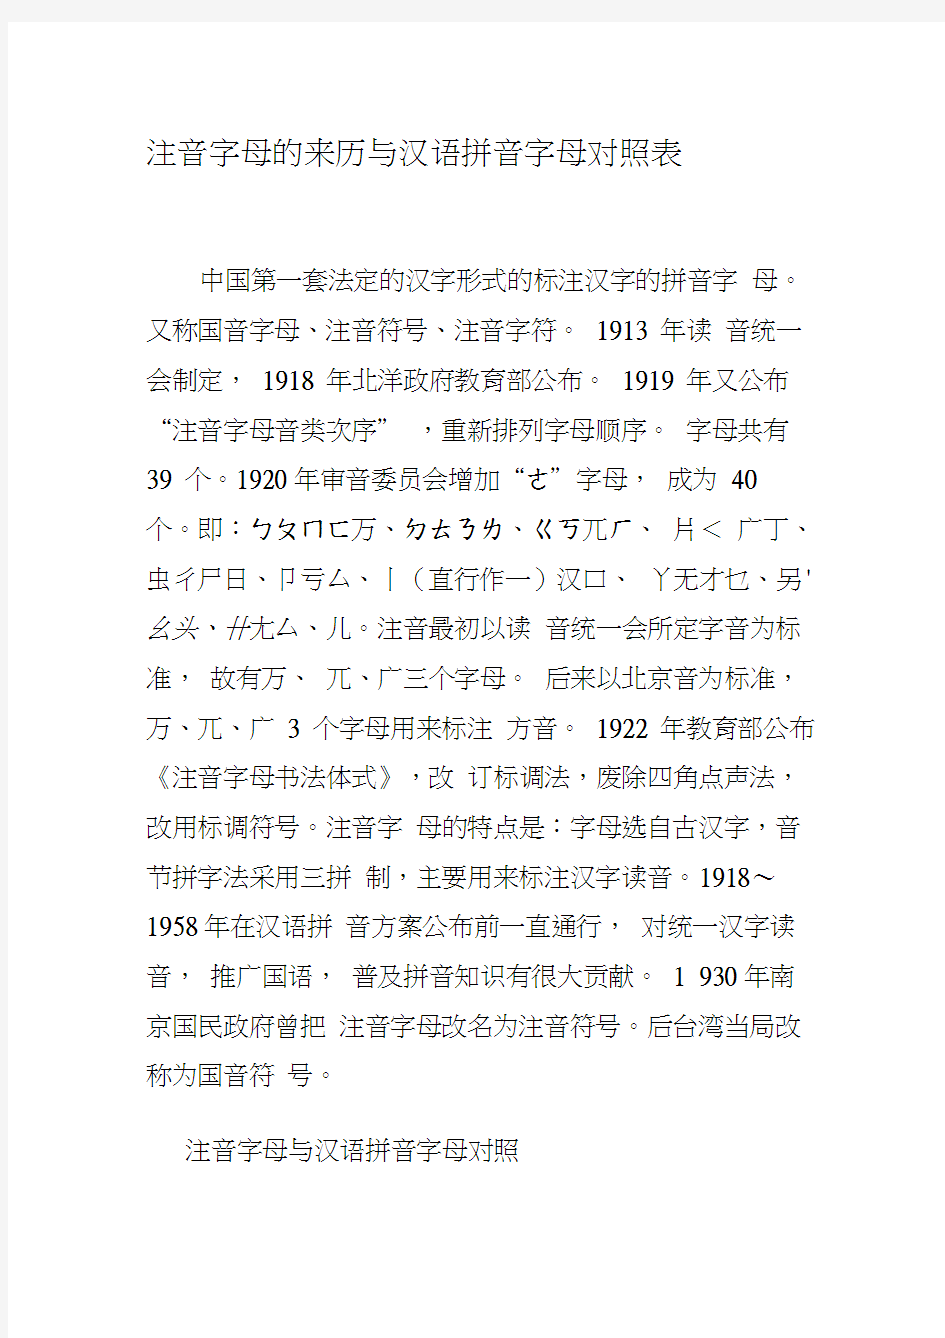 注音字母的来历与汉语拼音字母对照表(20200930061455)